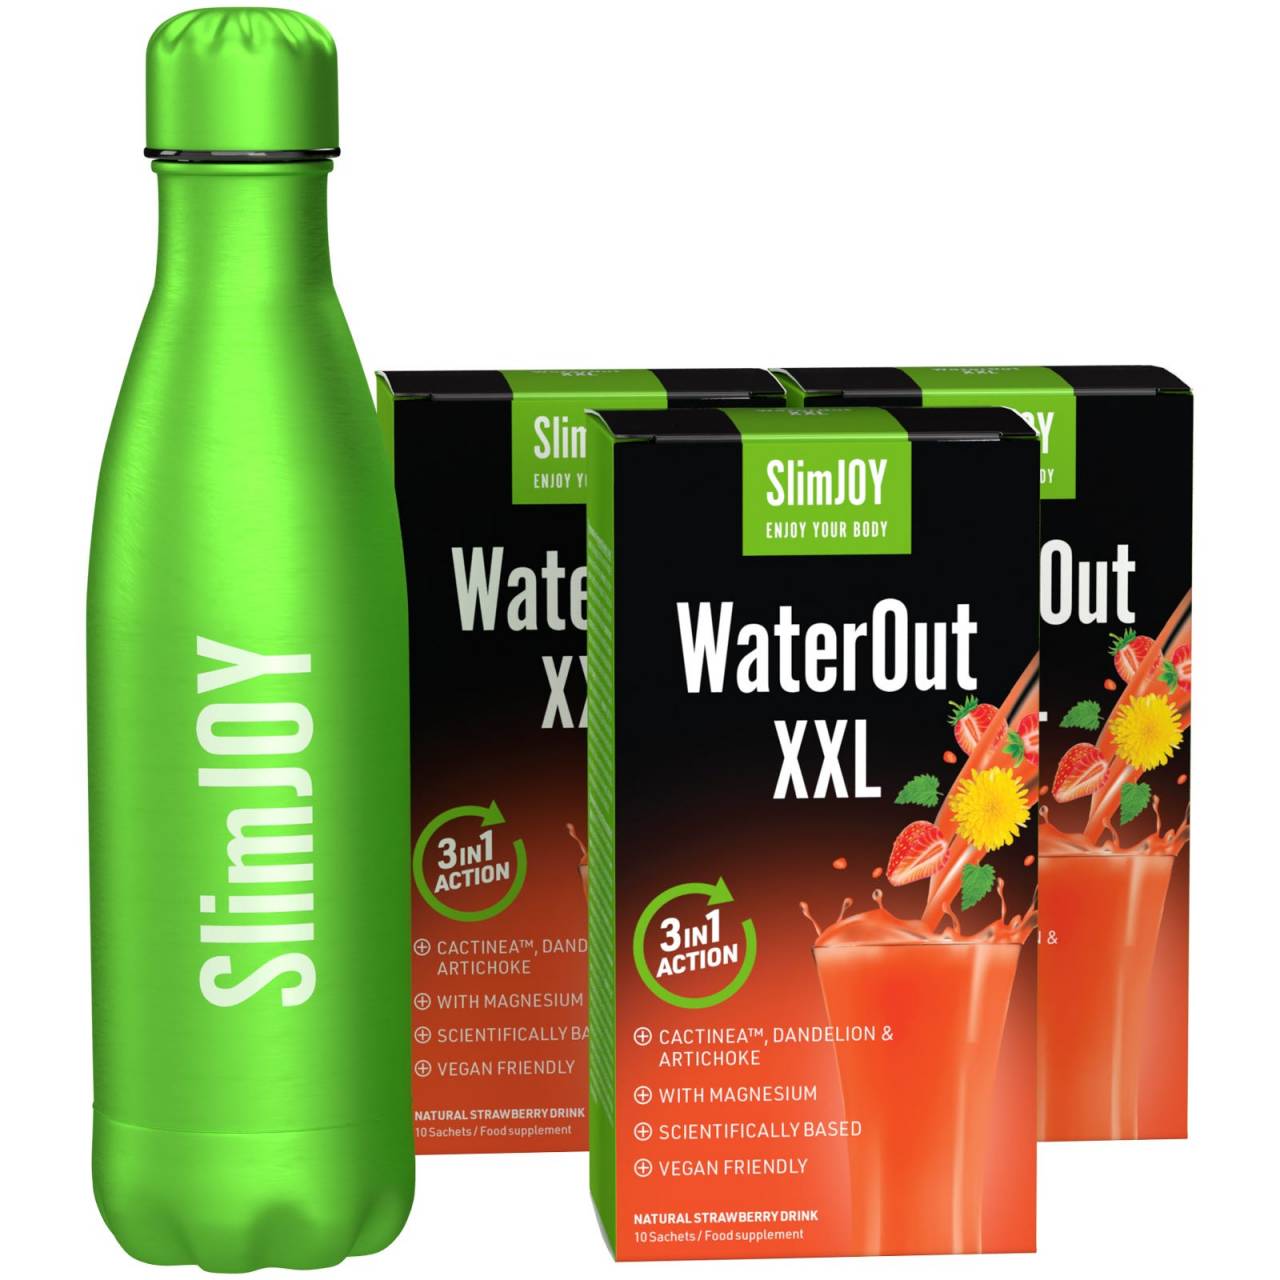 3x WaterOut XXL + GRATIS Thermo-Flasche: Tschüss Wassergewicht und Giftstoffe, hallo schlanke Linie.